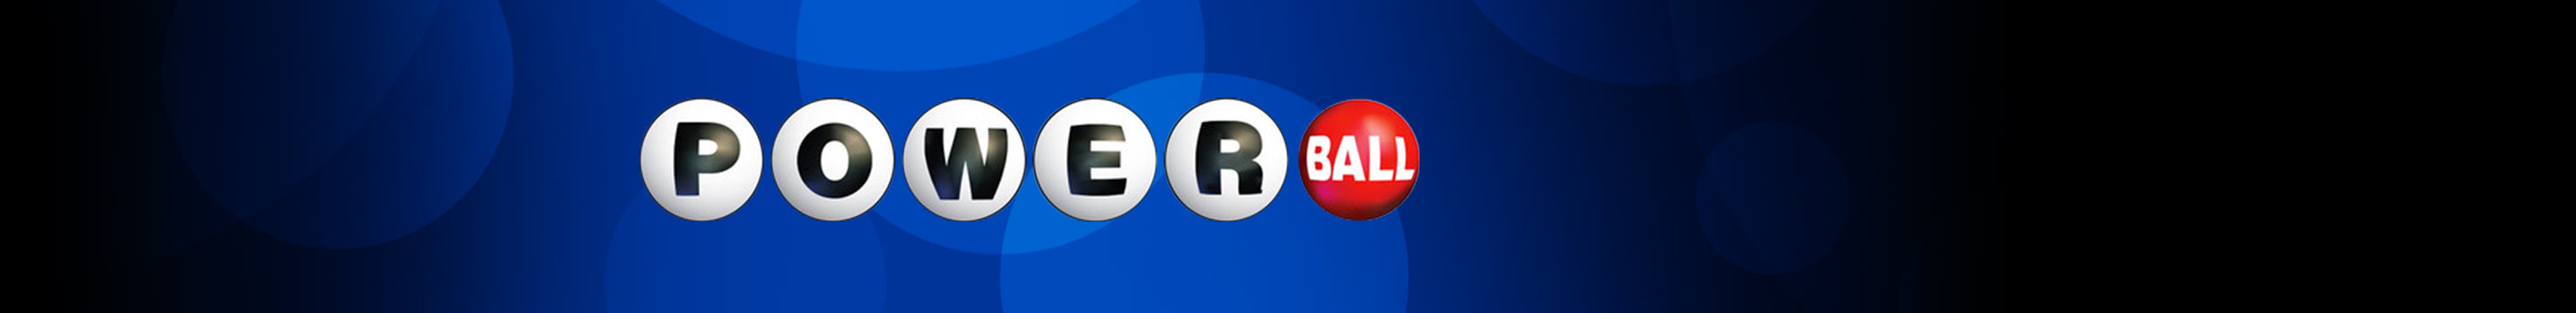 Powerball – največja loterija na svetu